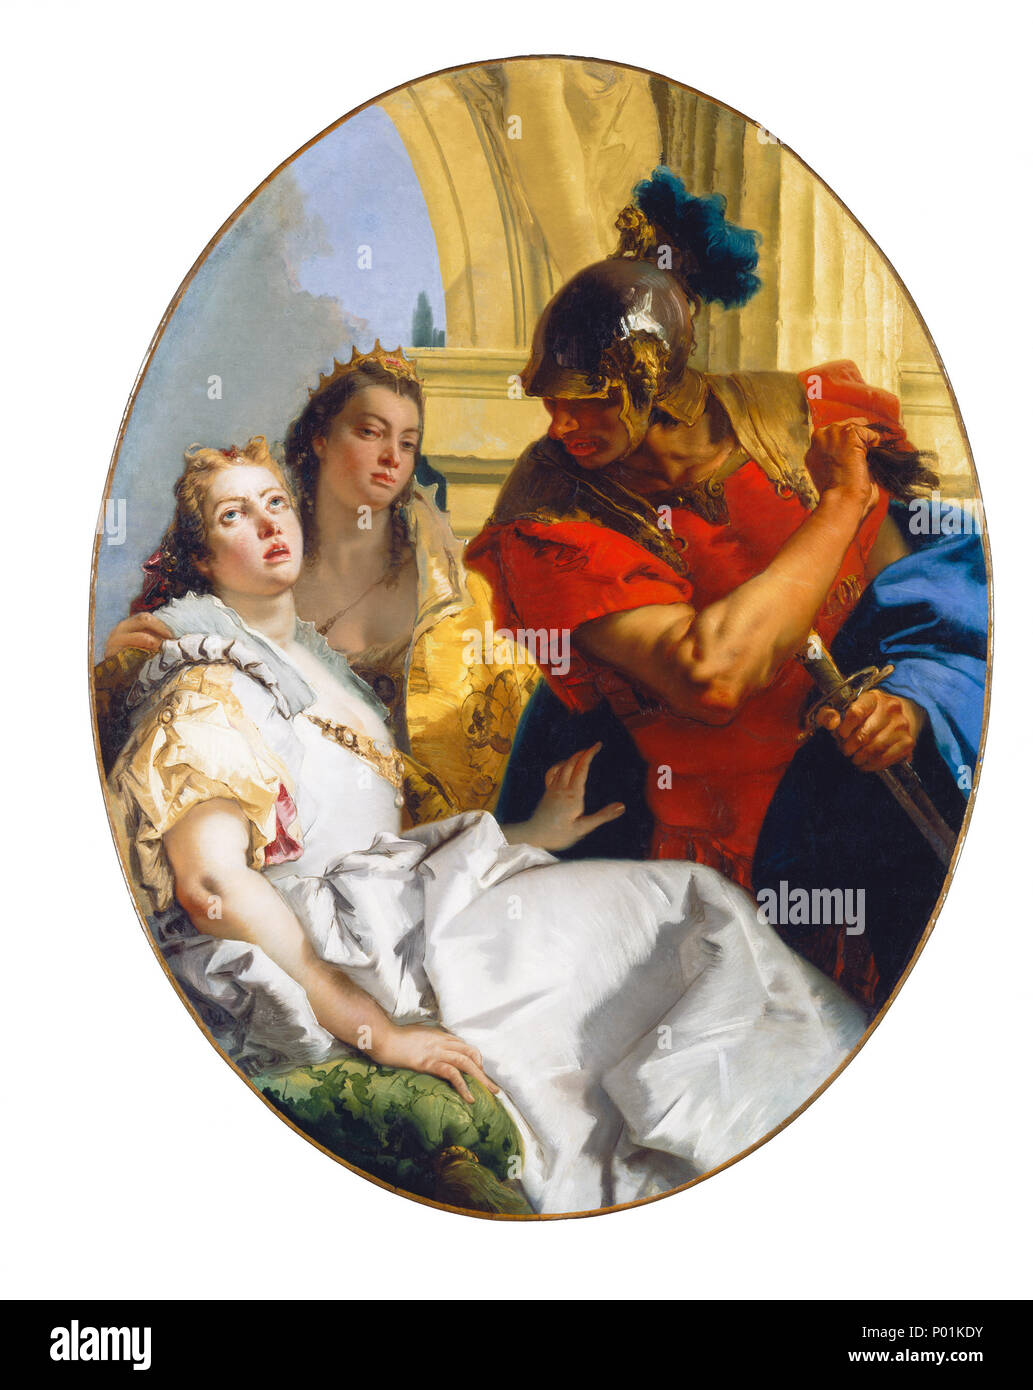 Giovanni Battista Tiepolo (Italien, 1696 - 1770 ), scène de l'histoire ancienne, c. 1750, huile sur toile, Samuel H. Kress Collection 21 Scène d'histoire ancienne G-05029-002 Banque D'Images